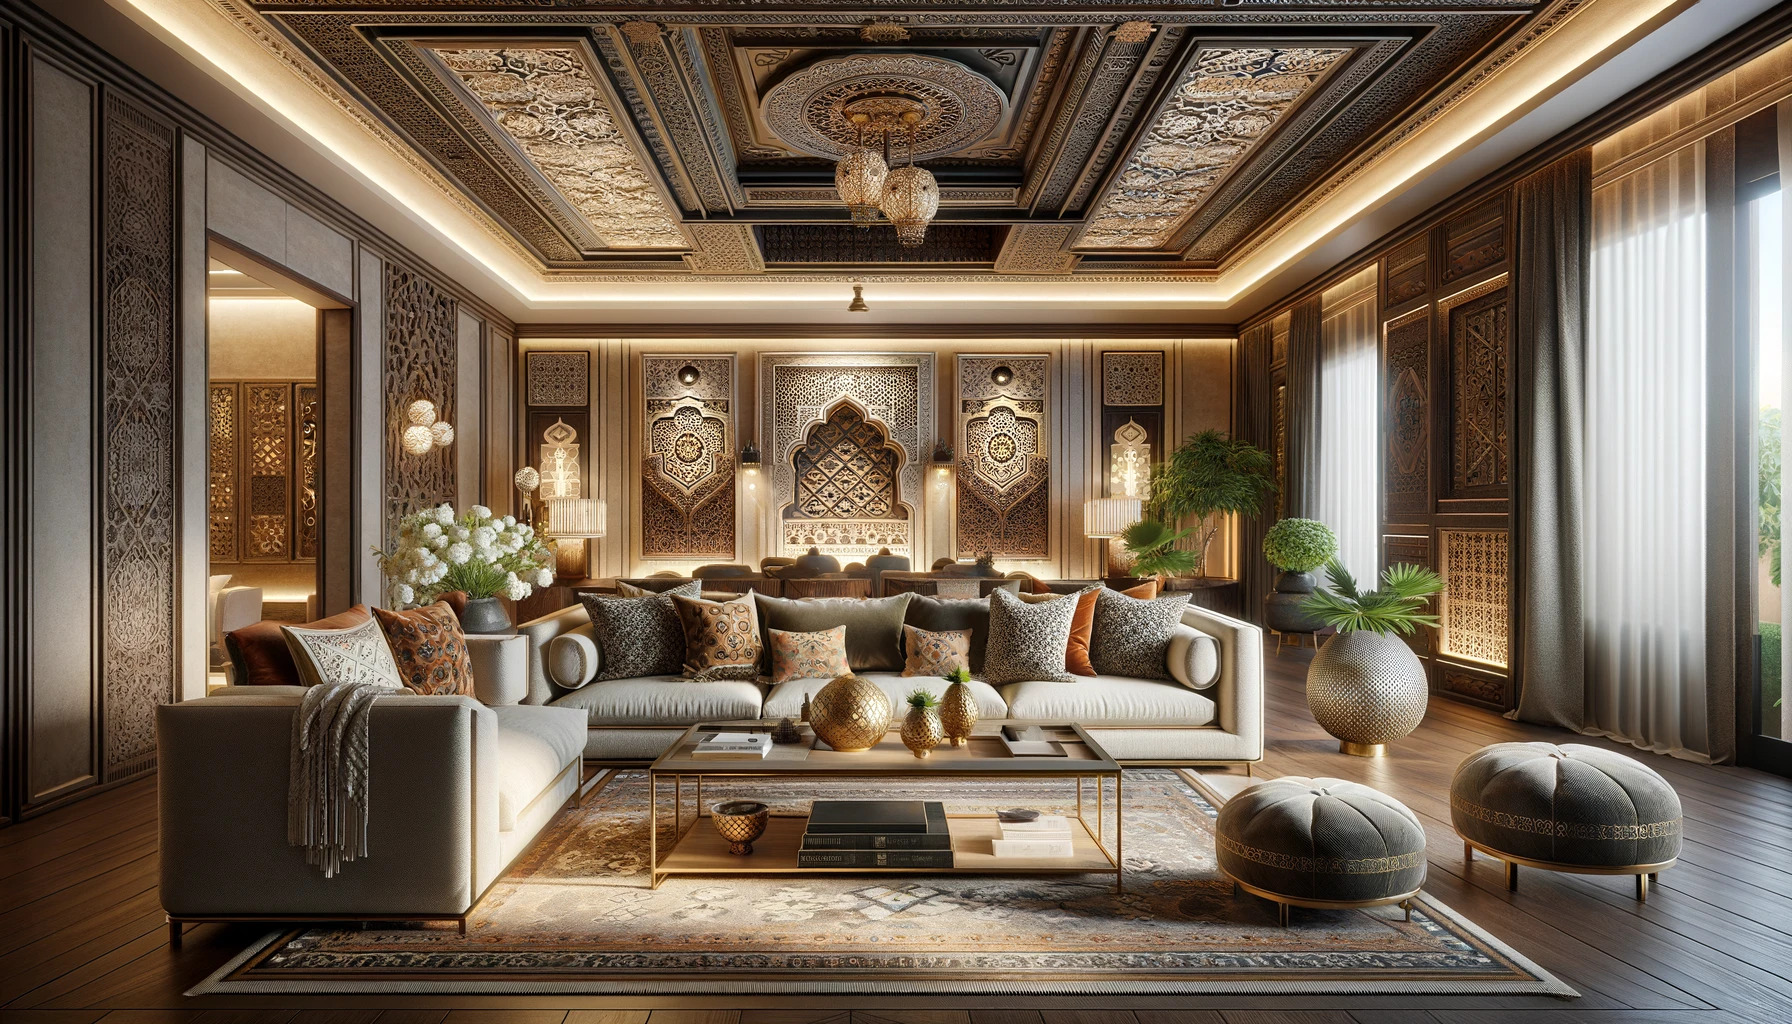 複雑な装飾パネルと繊細な木の彫刻が中東特有の豪華なデザインを内装に取り入れています